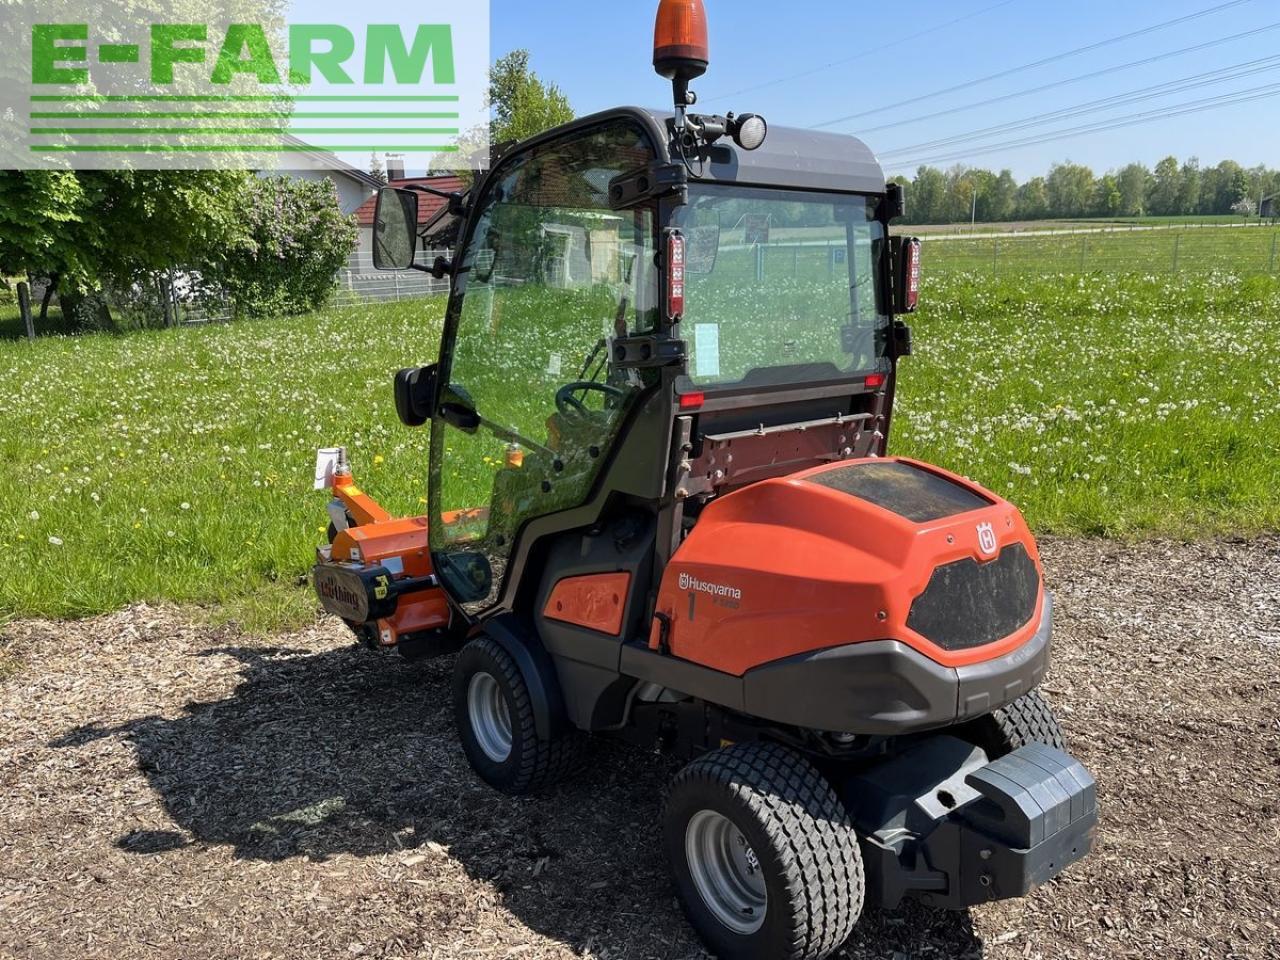 Farm tractor Husqvarna p525 d mit kabine und schleglmäher: picture 10